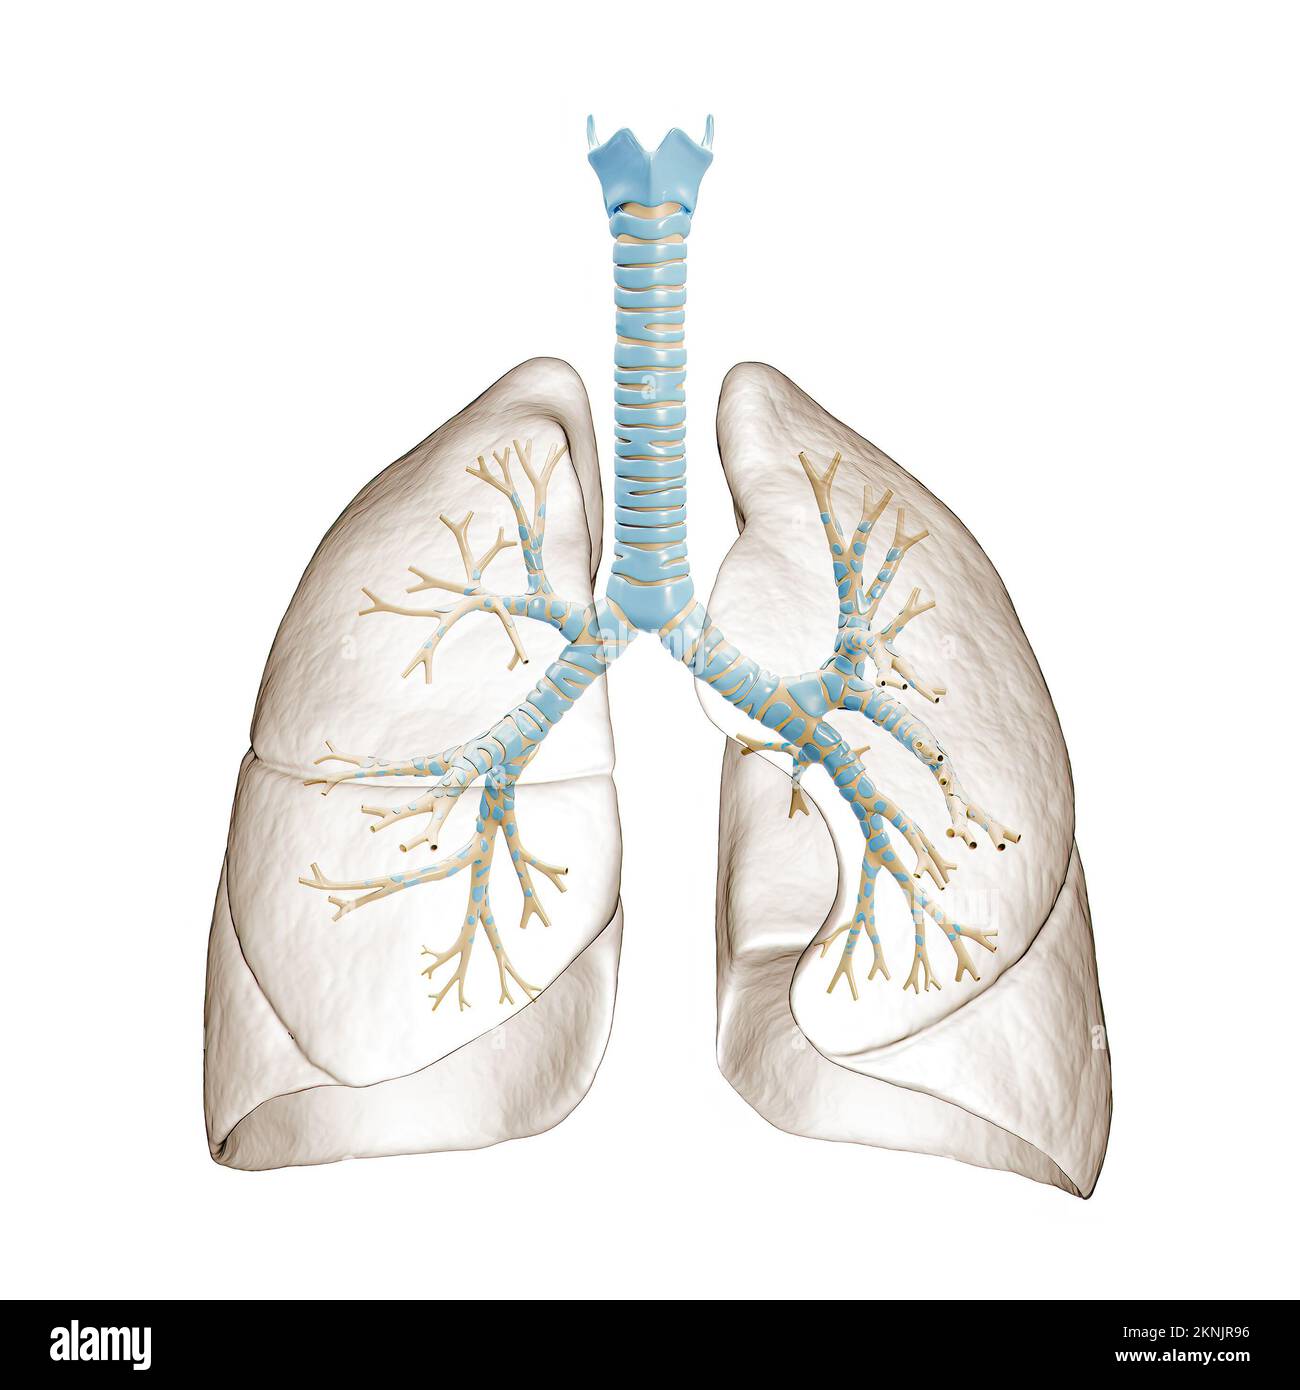 Polmoni umani con albero bronchiale o trachea con bronchi 3D raffigurante. Diagramma anatomico vuoto o grafico su sfondo bianco. Medico, hea Foto Stock